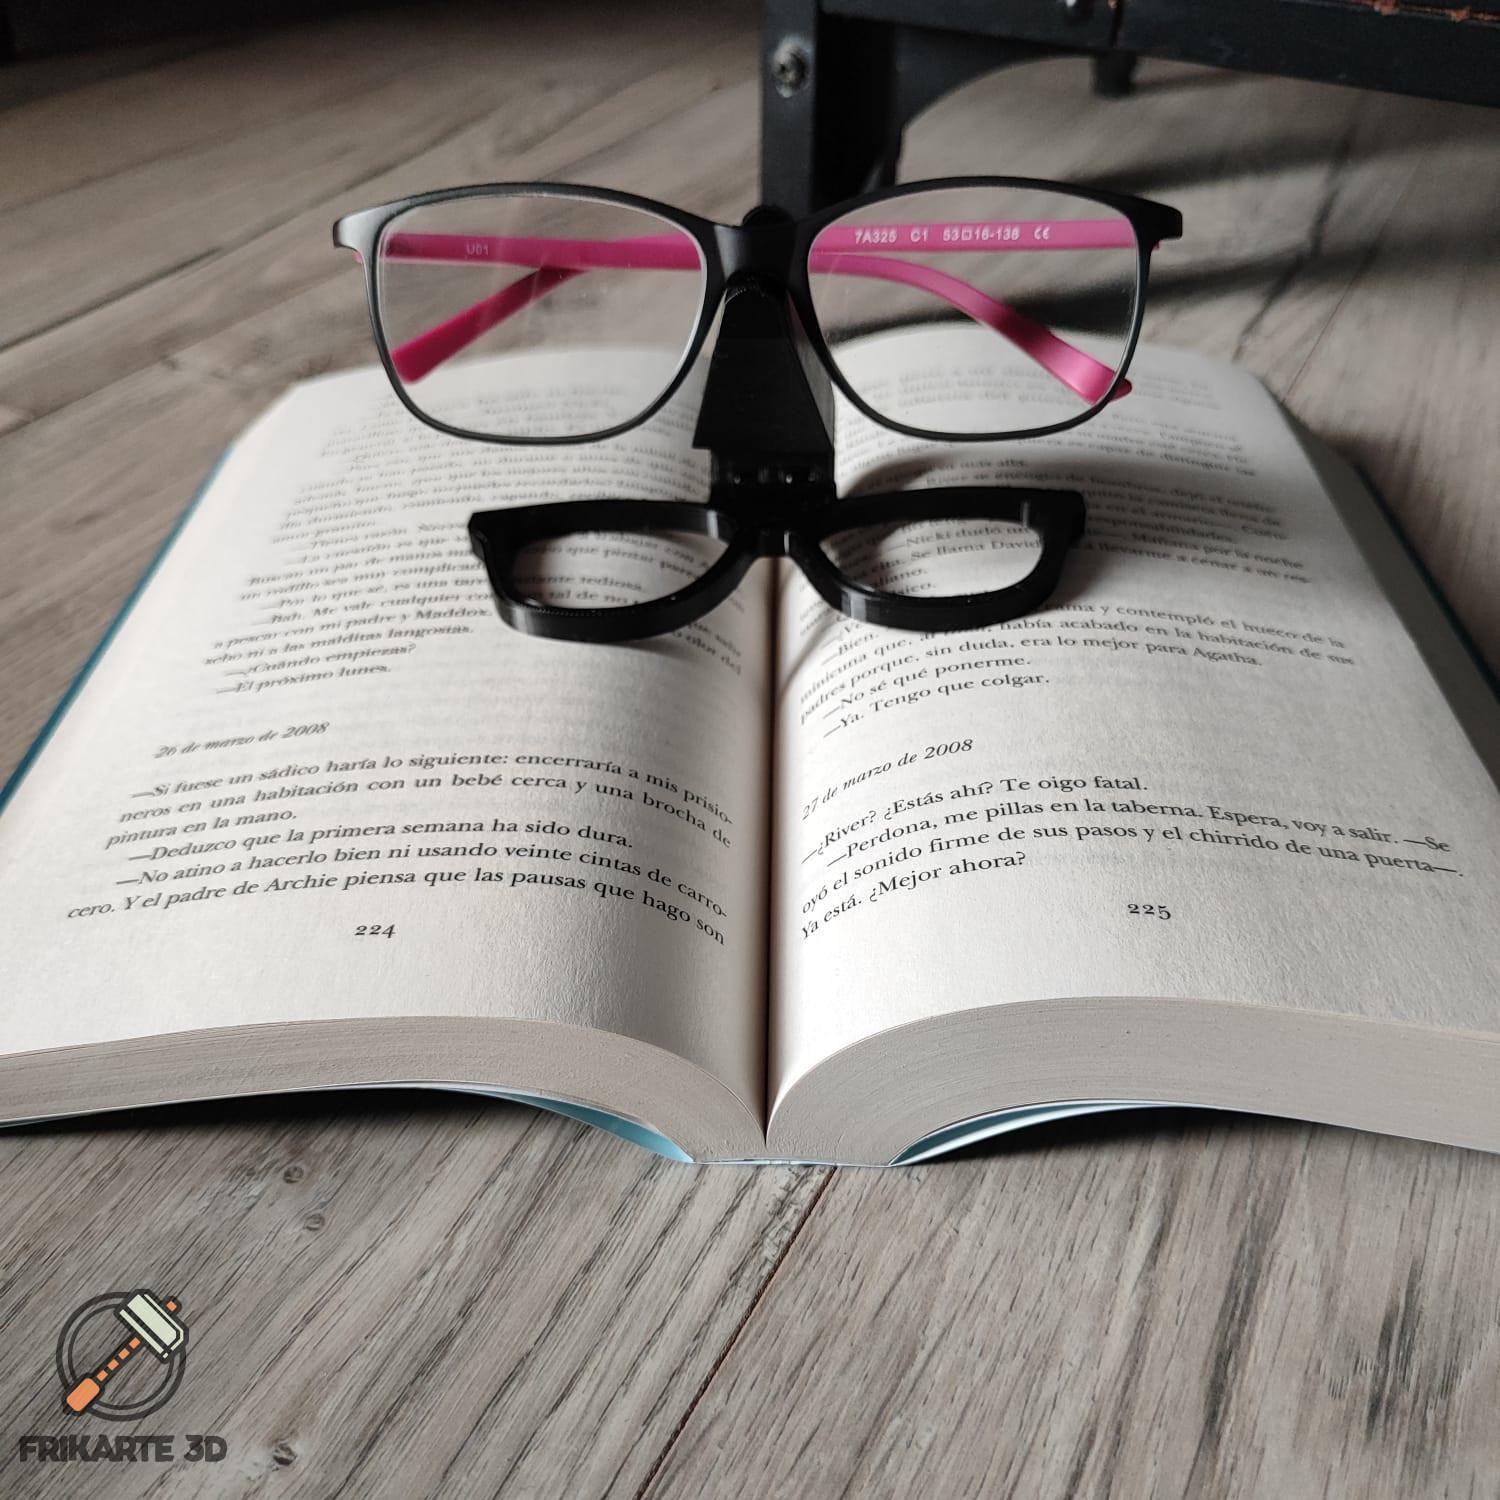 Flexi Eyeglass Holder 😎 3d model